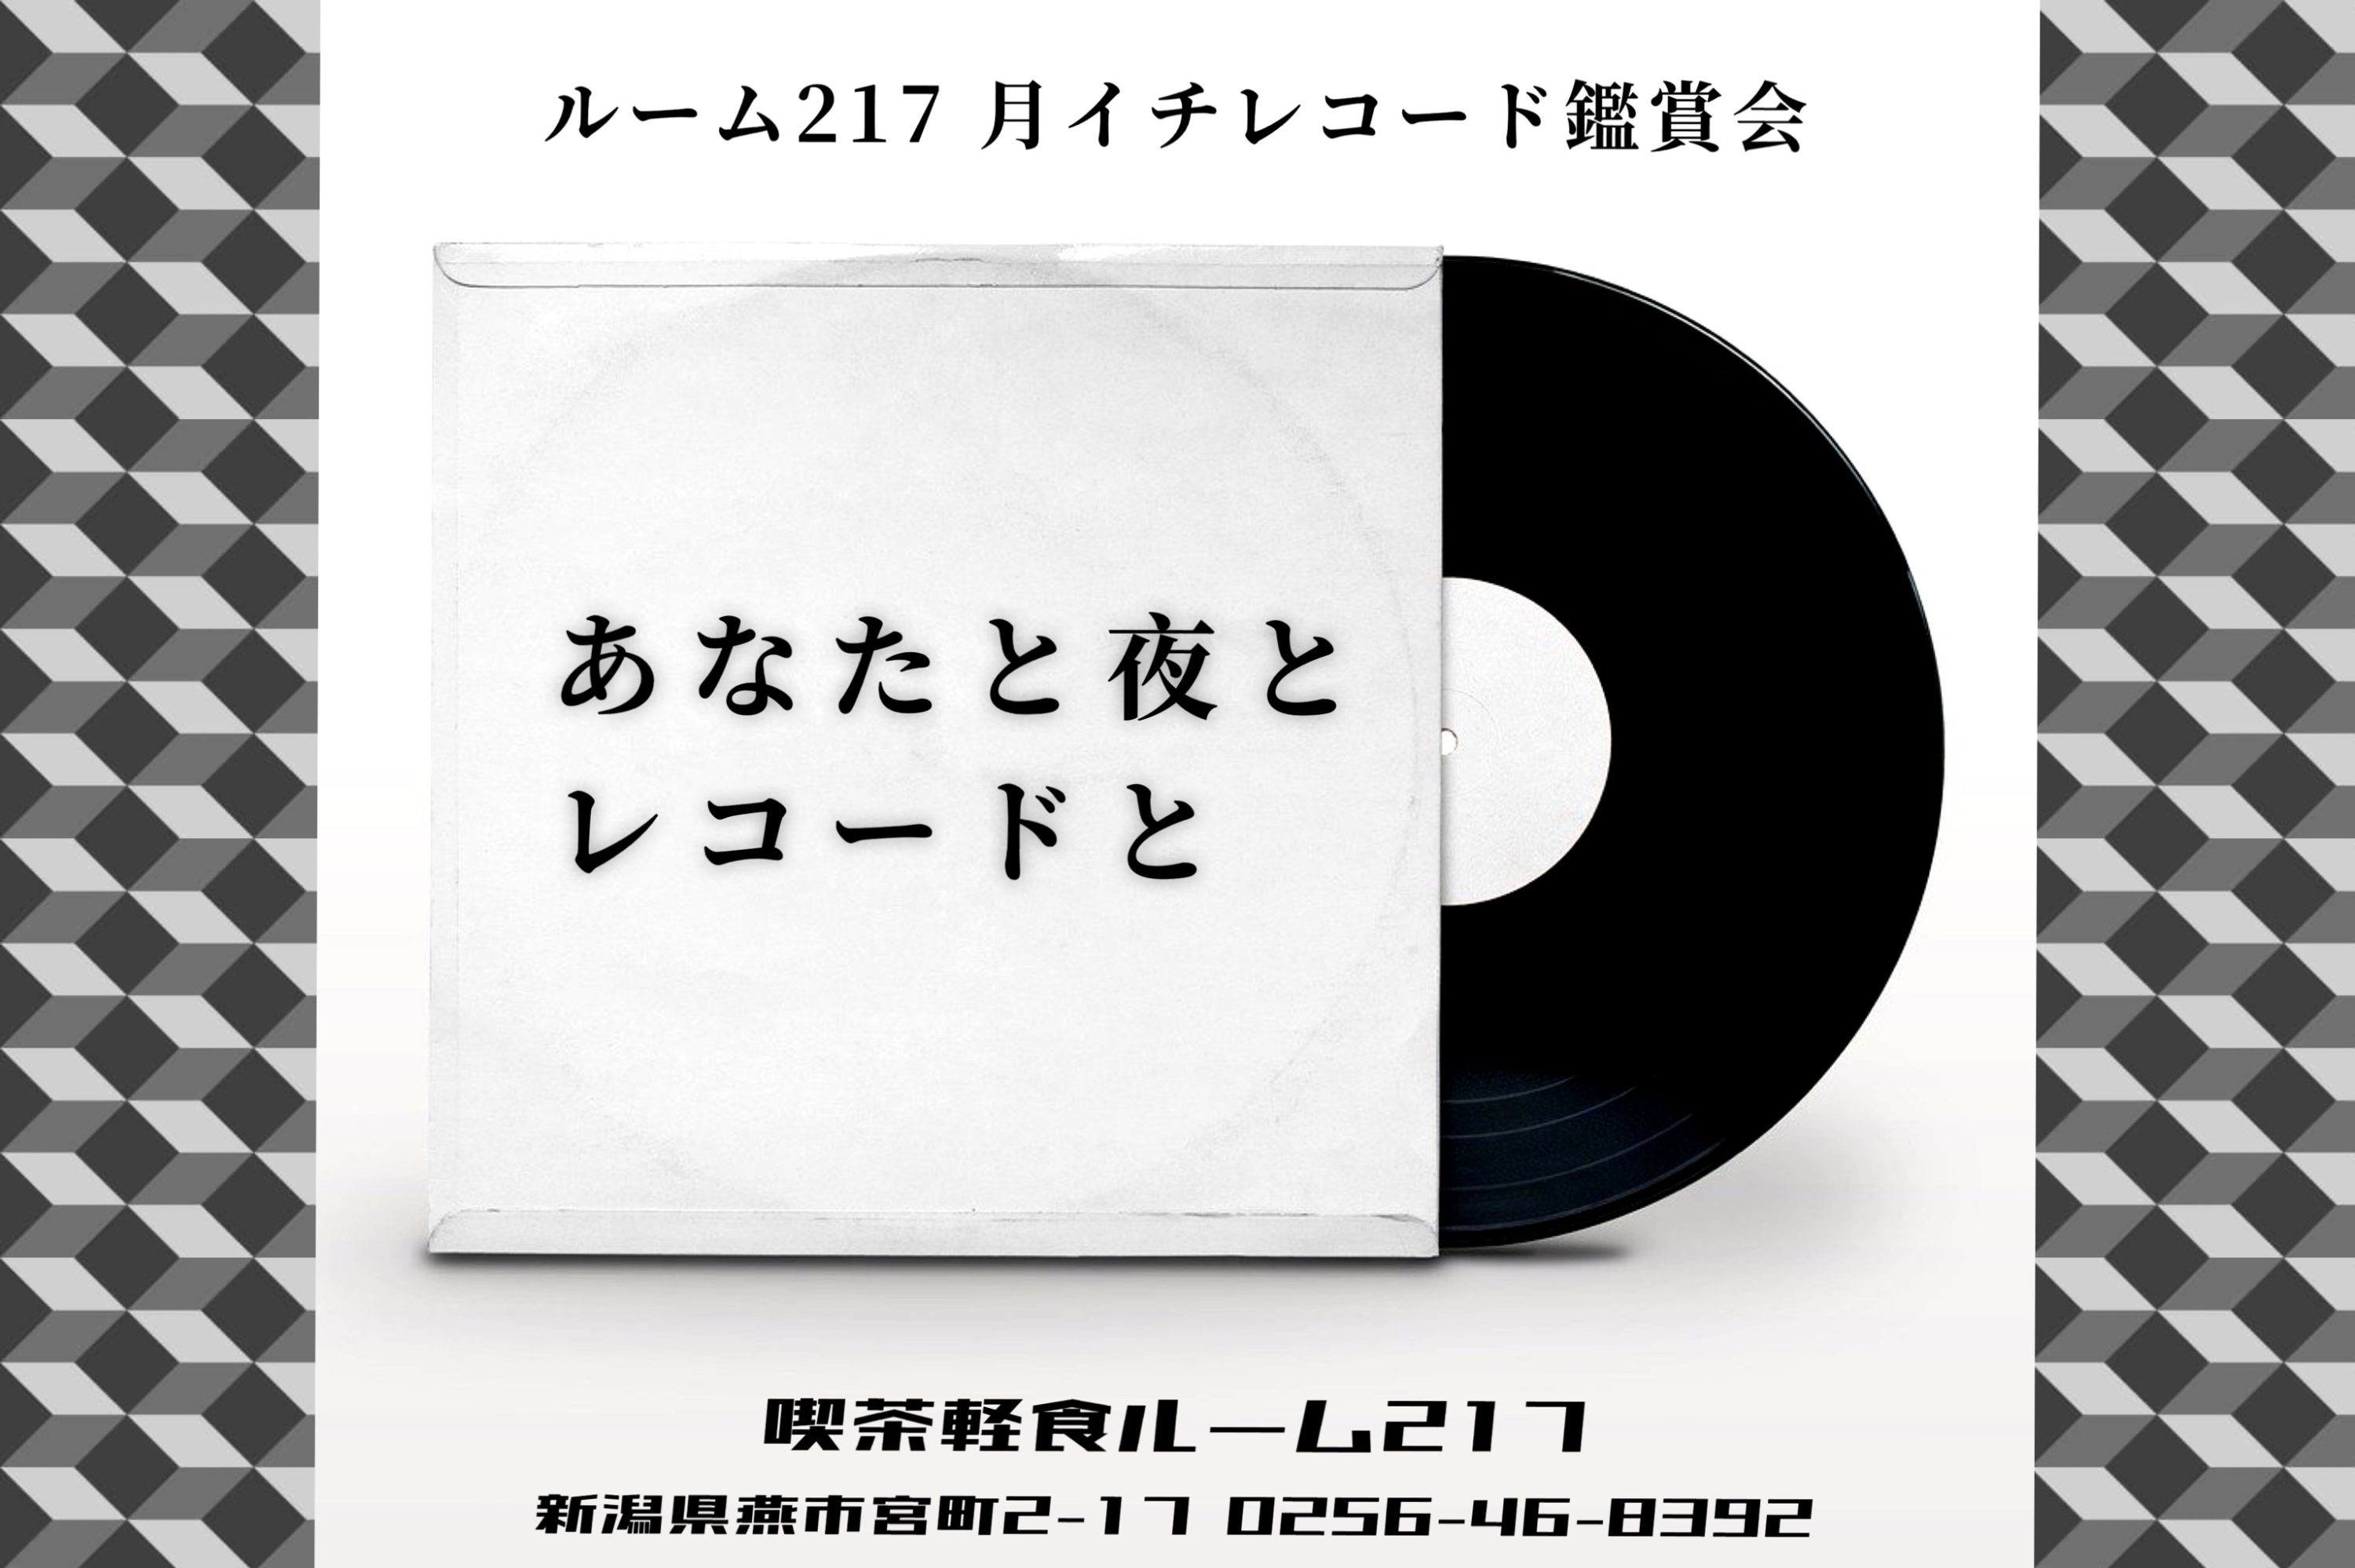 6/26(月) レコード鑑賞会